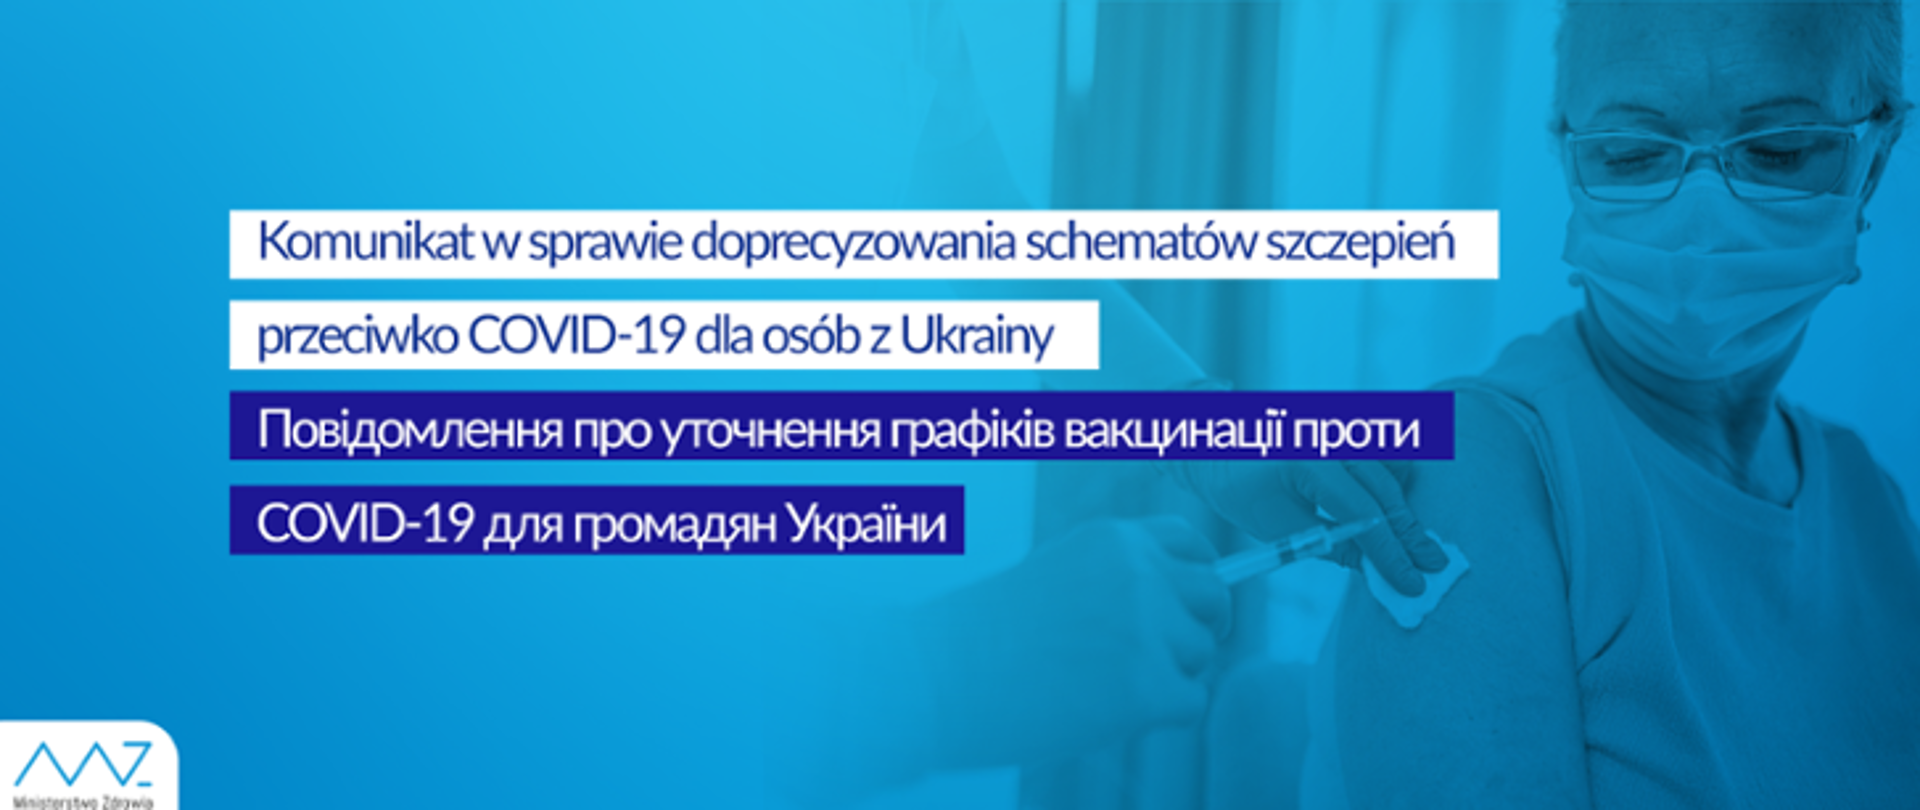 doprecyzowanie schematów szczepień przeciwko Covid-19 dla osób z Ukrainy